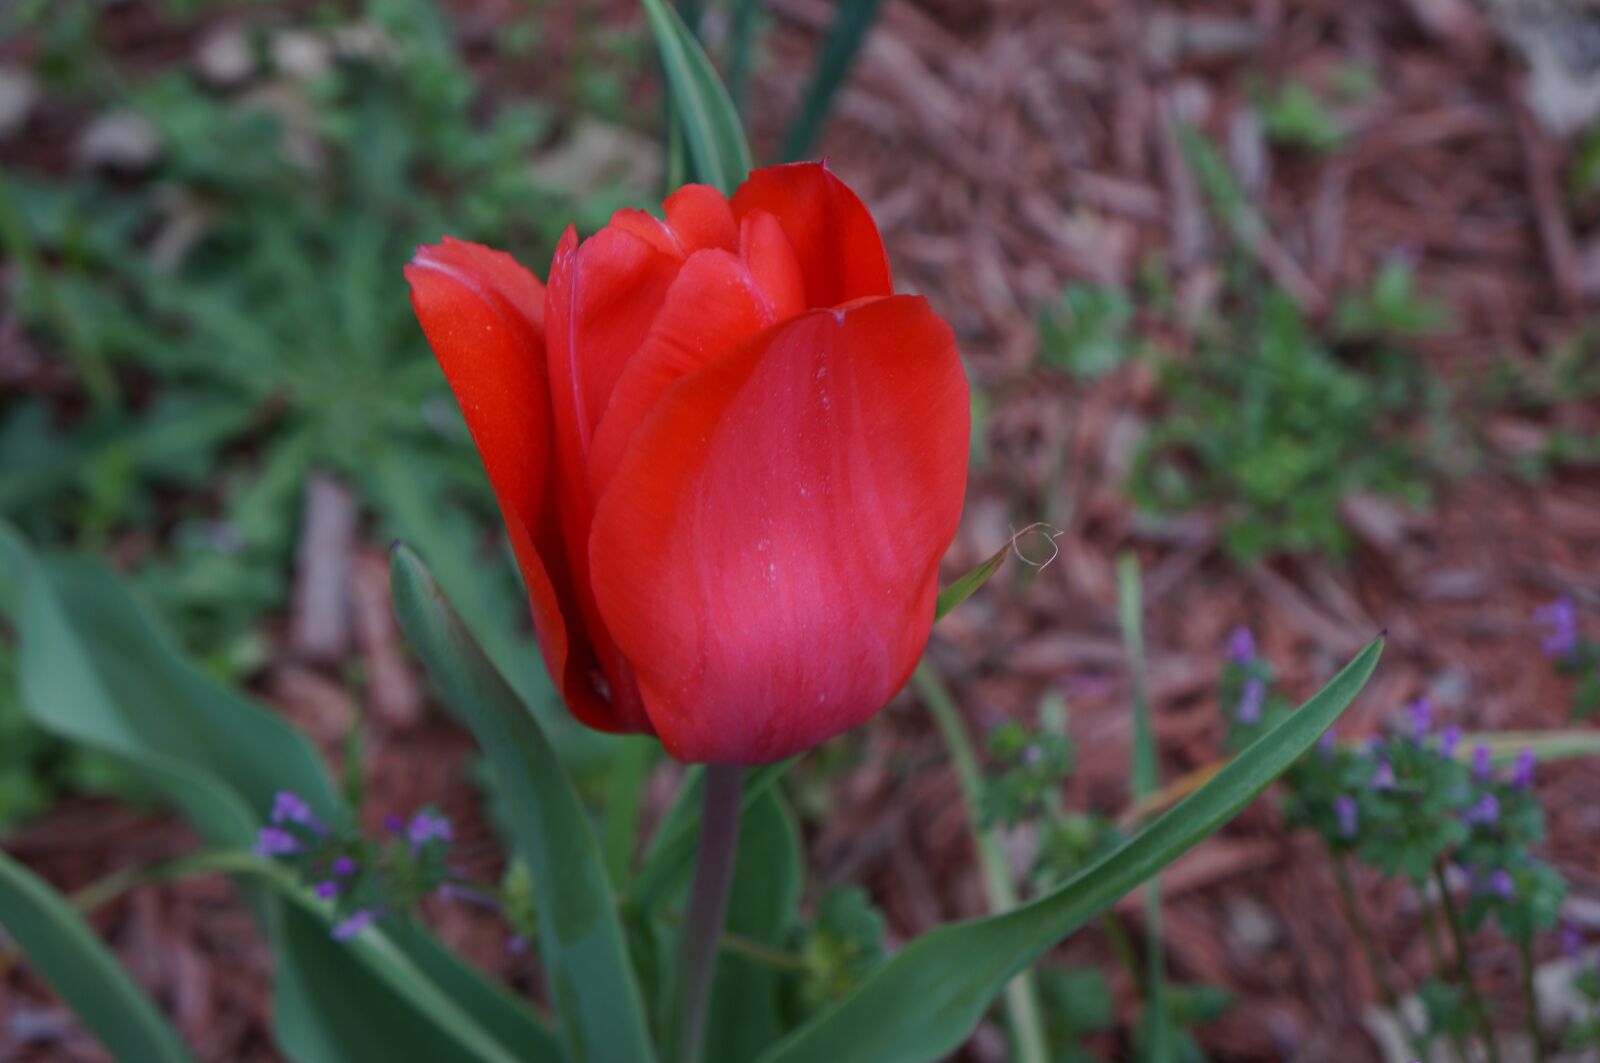 Sony E 18-55mm F3.5-5.6 OSS sample photo. Tulip, flower, garden photography